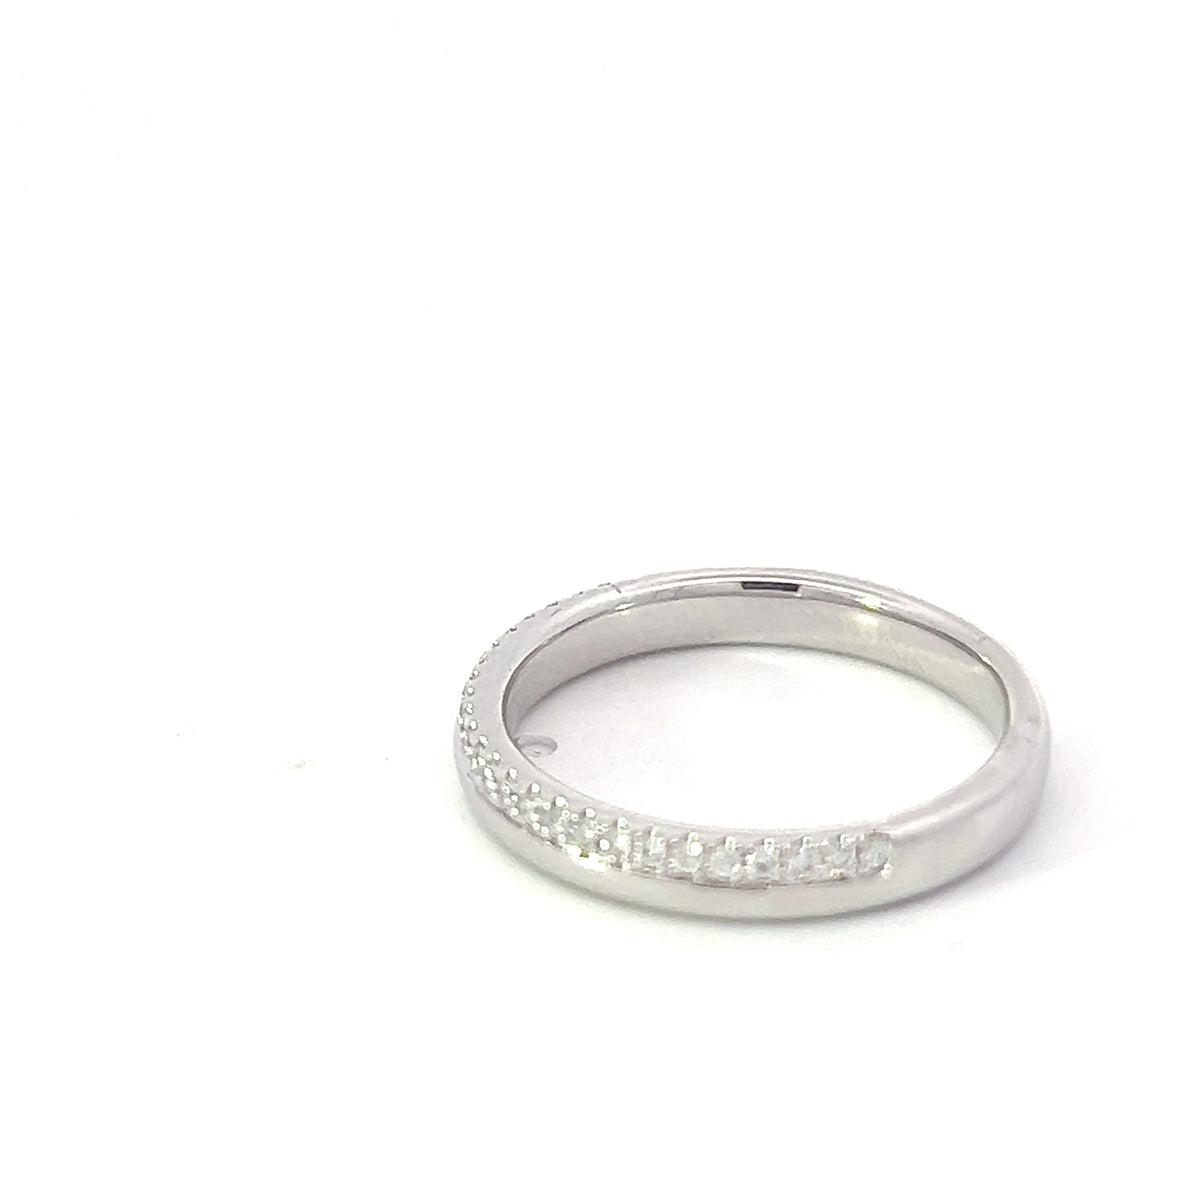 14K White Gold 0.16cttw Diamond Ring - size 6.5